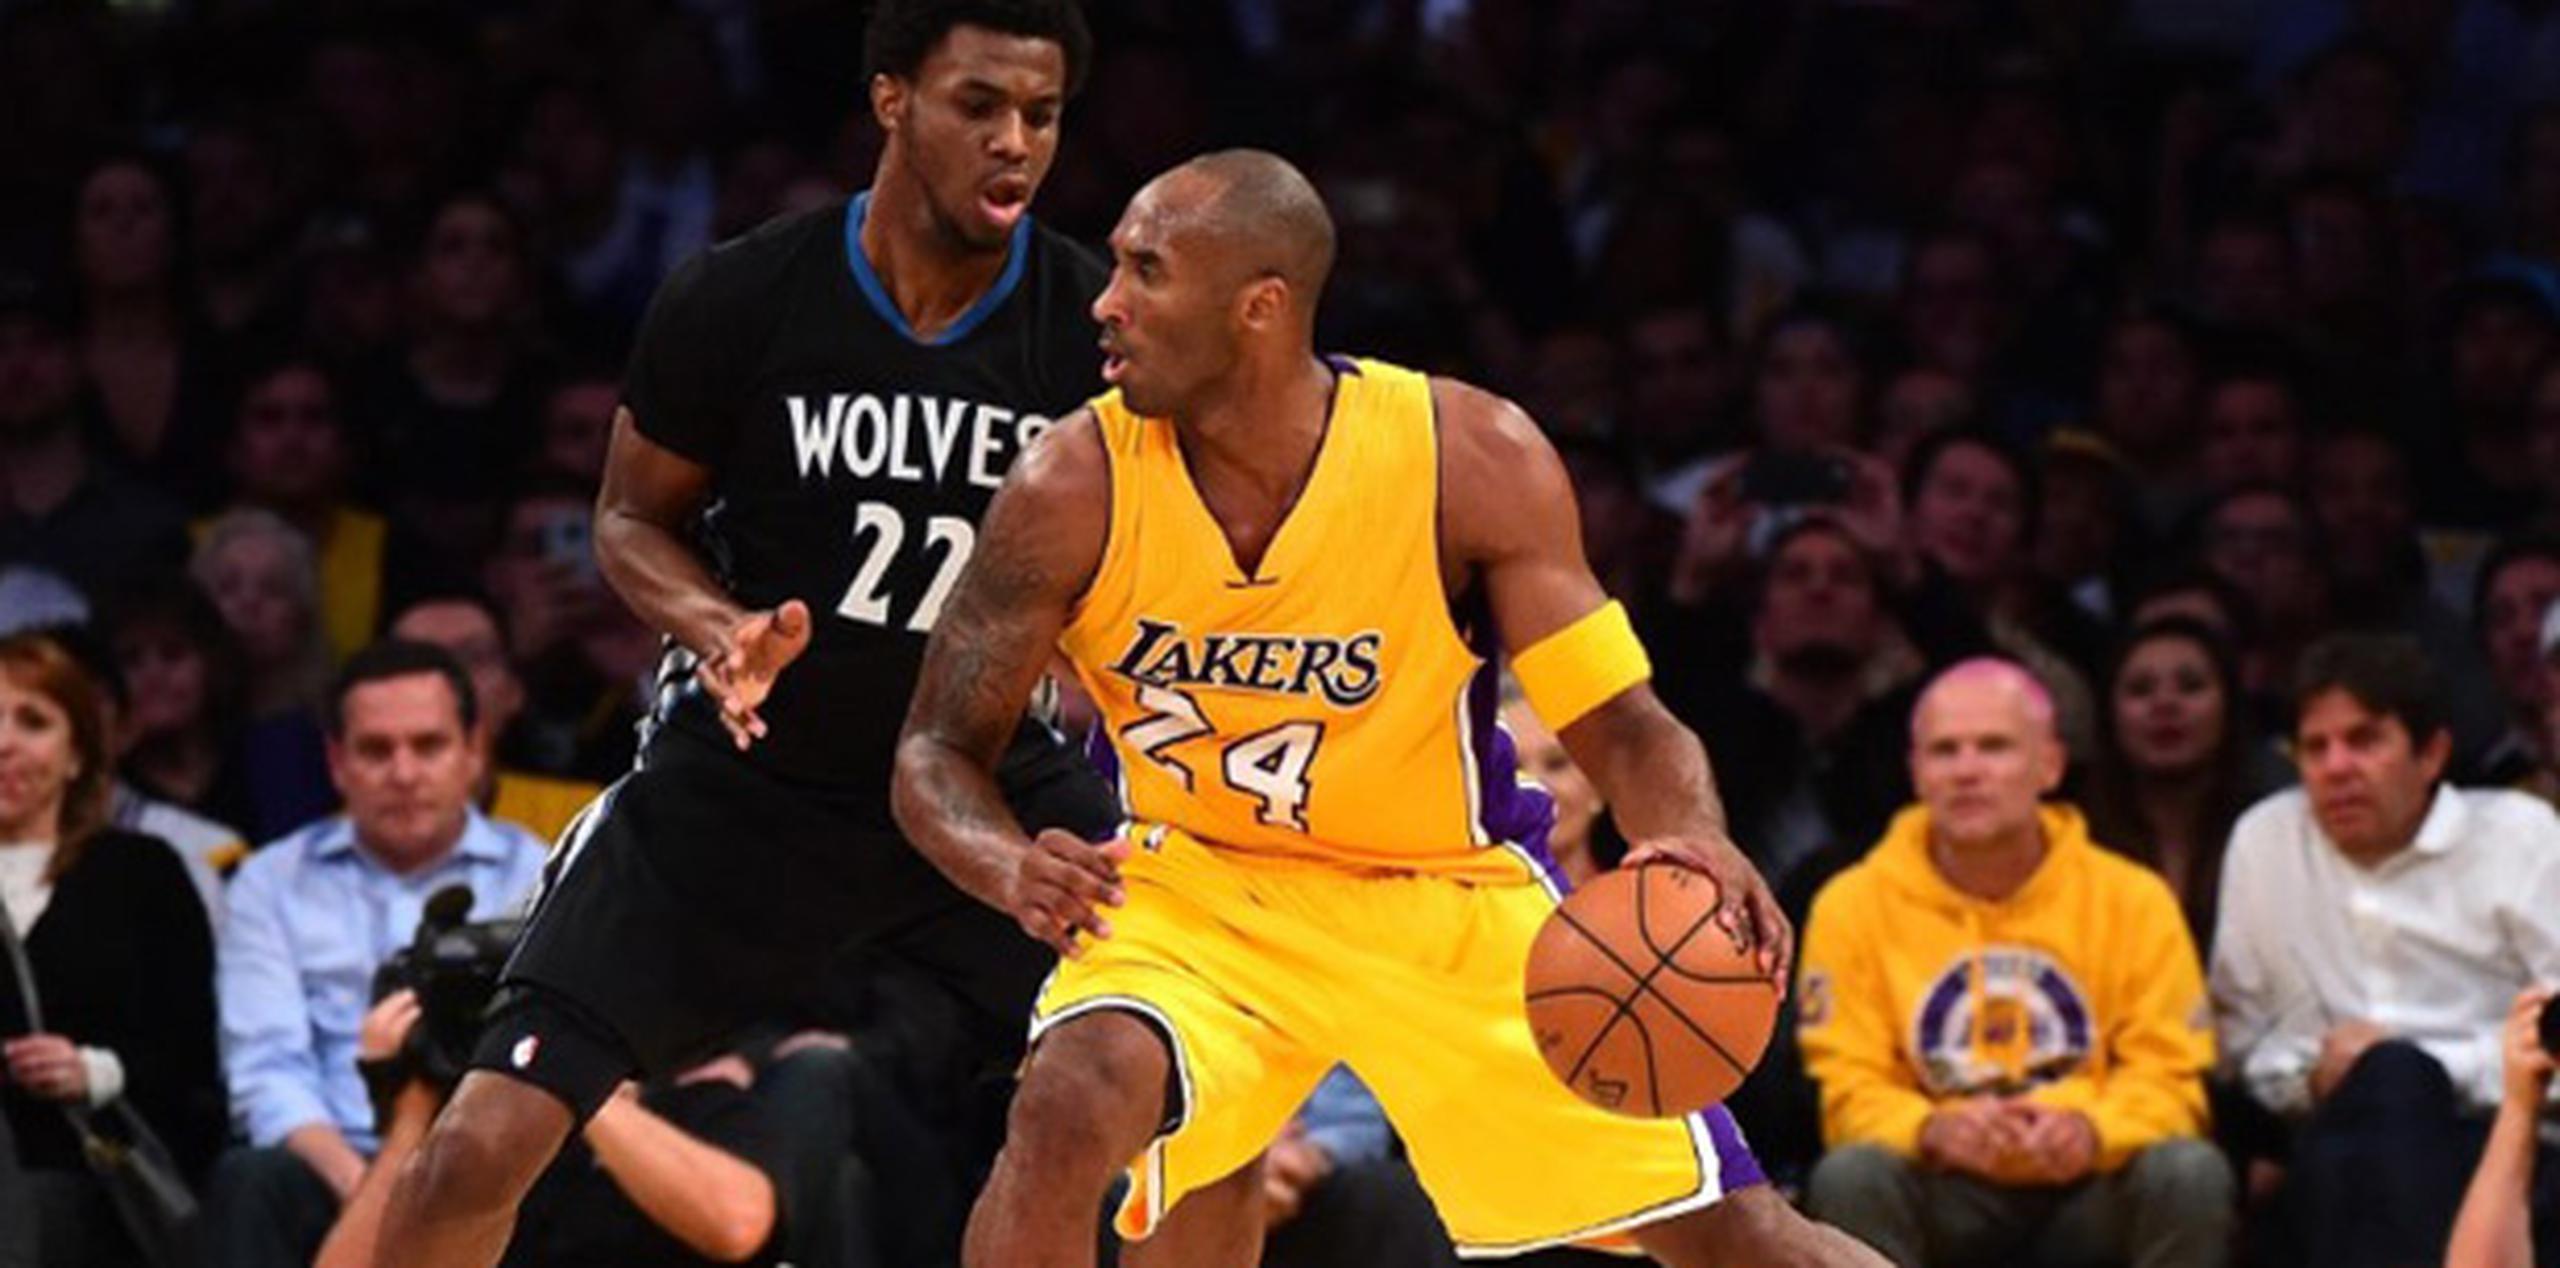 Kobe Bryant anotó 24 puntos en el primer partido de su 20ma temporada con los Lakers, rompiendo así el record de John Stockton de más temporadas en la NBA con el mismo equipo. (AFP)